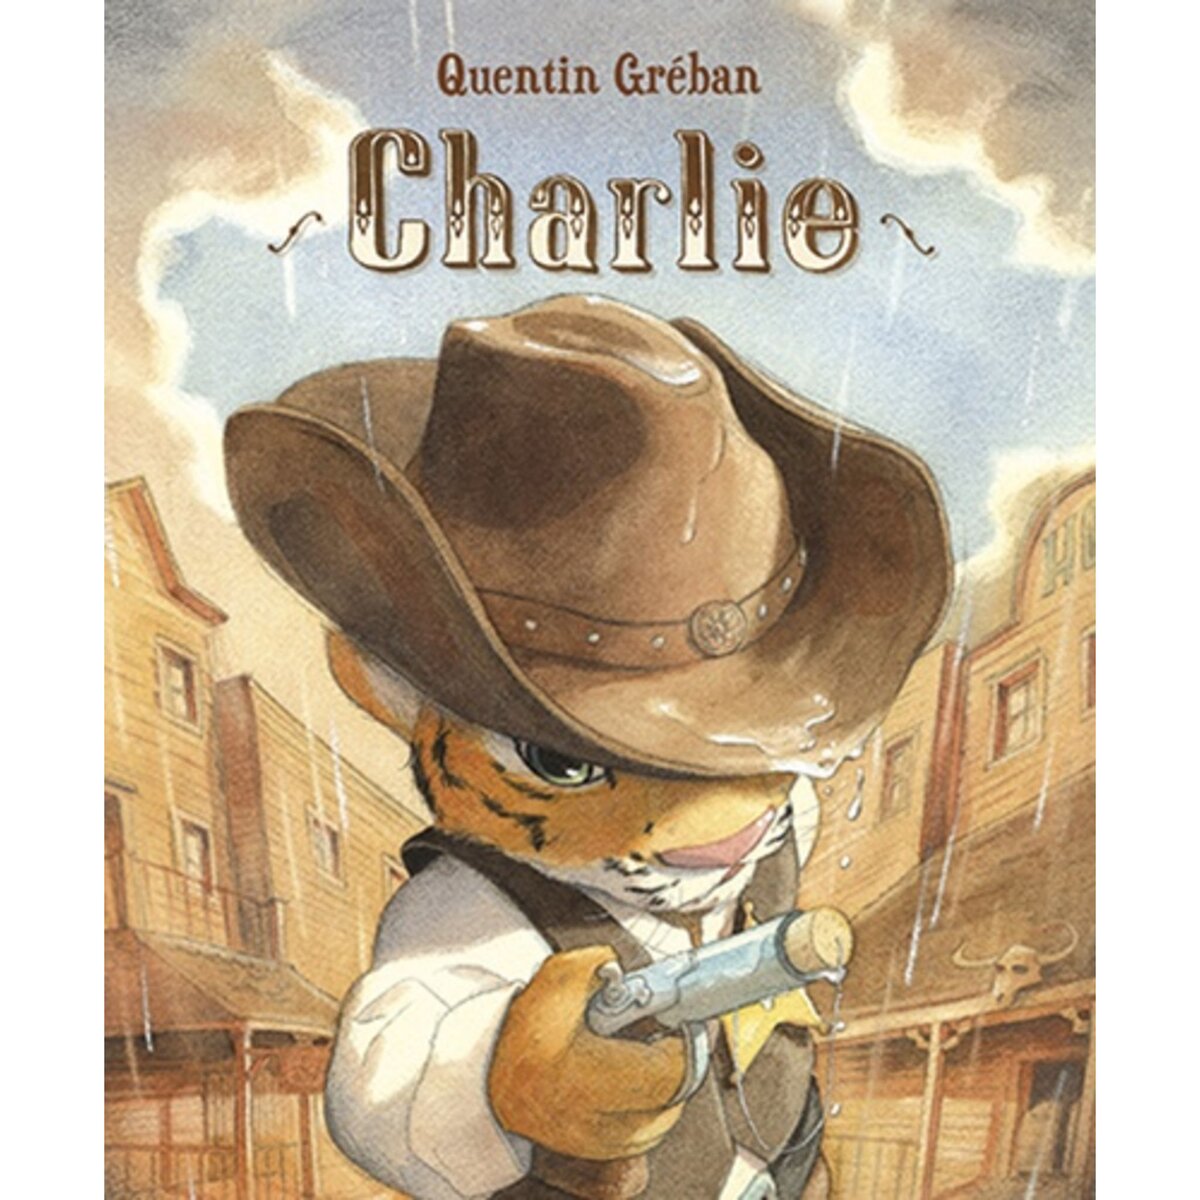  CHARLIE, Gréban Quentin